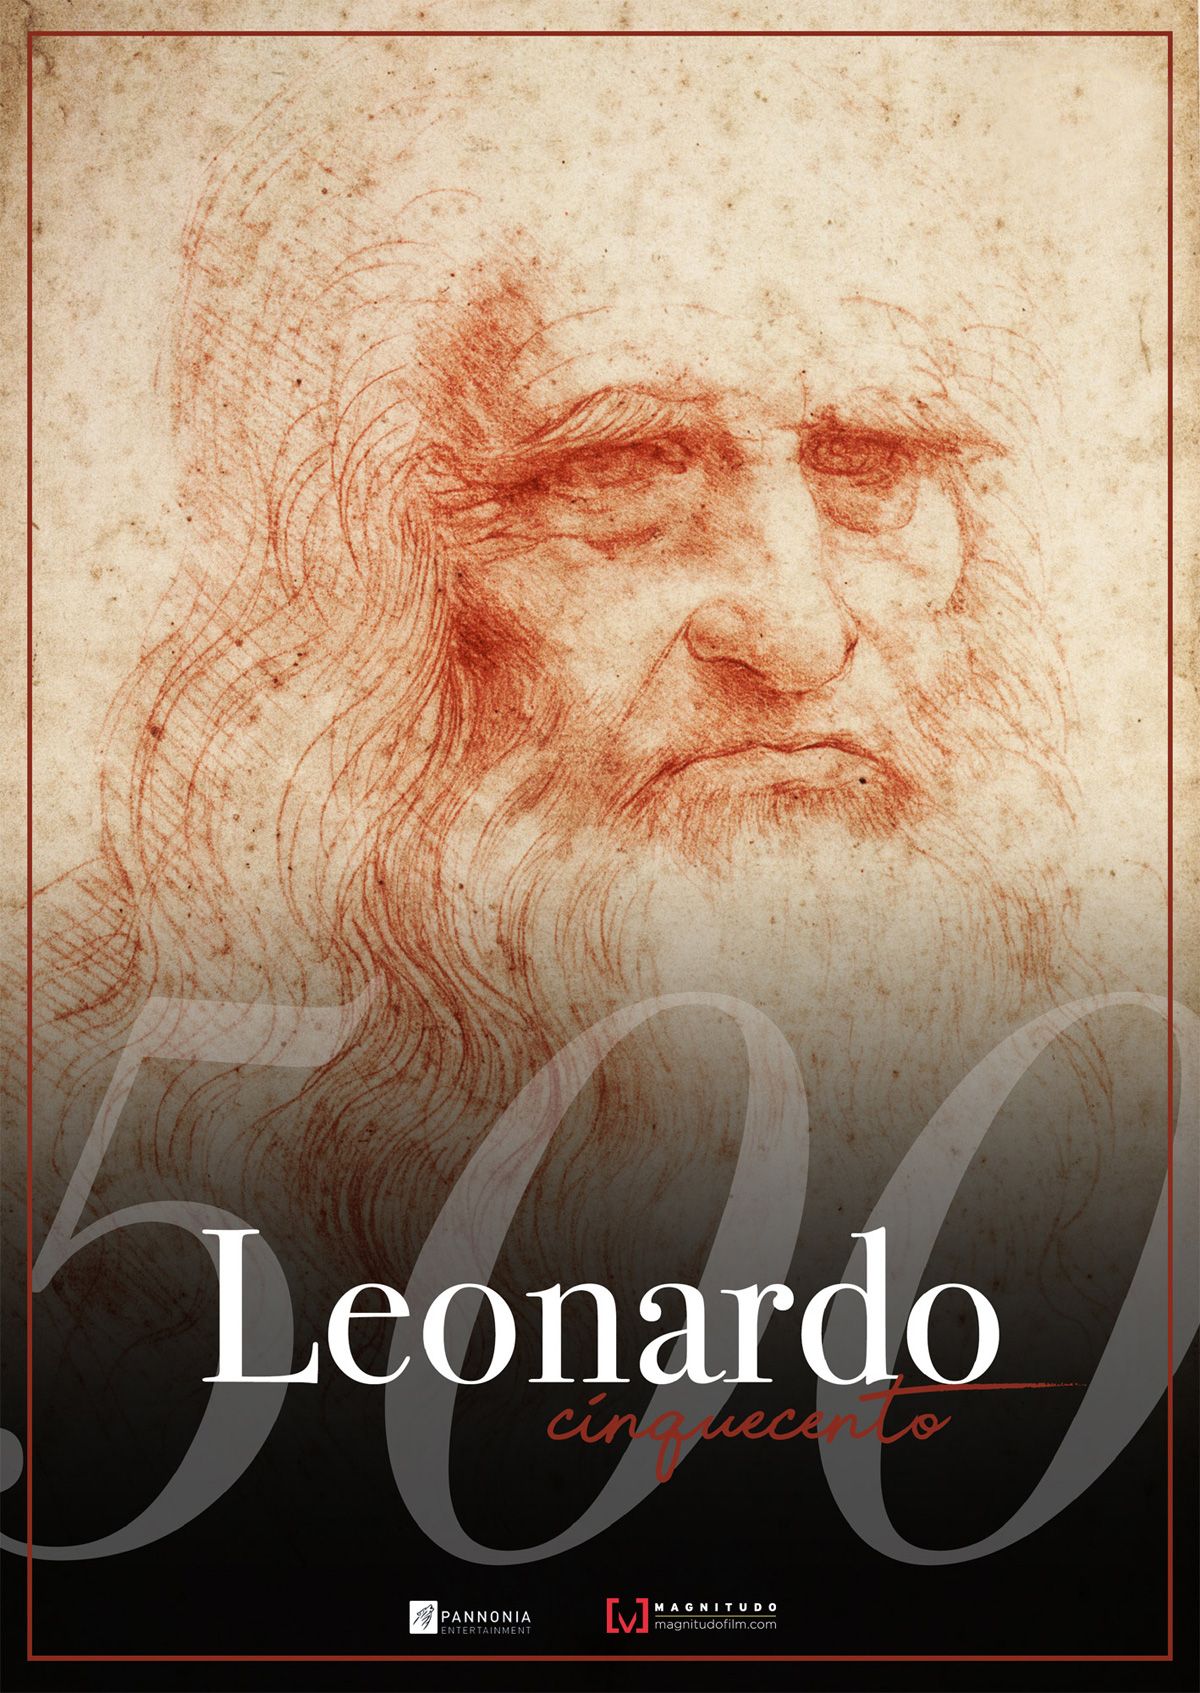 Cartel de Leonardo, quinto centenario (2019)